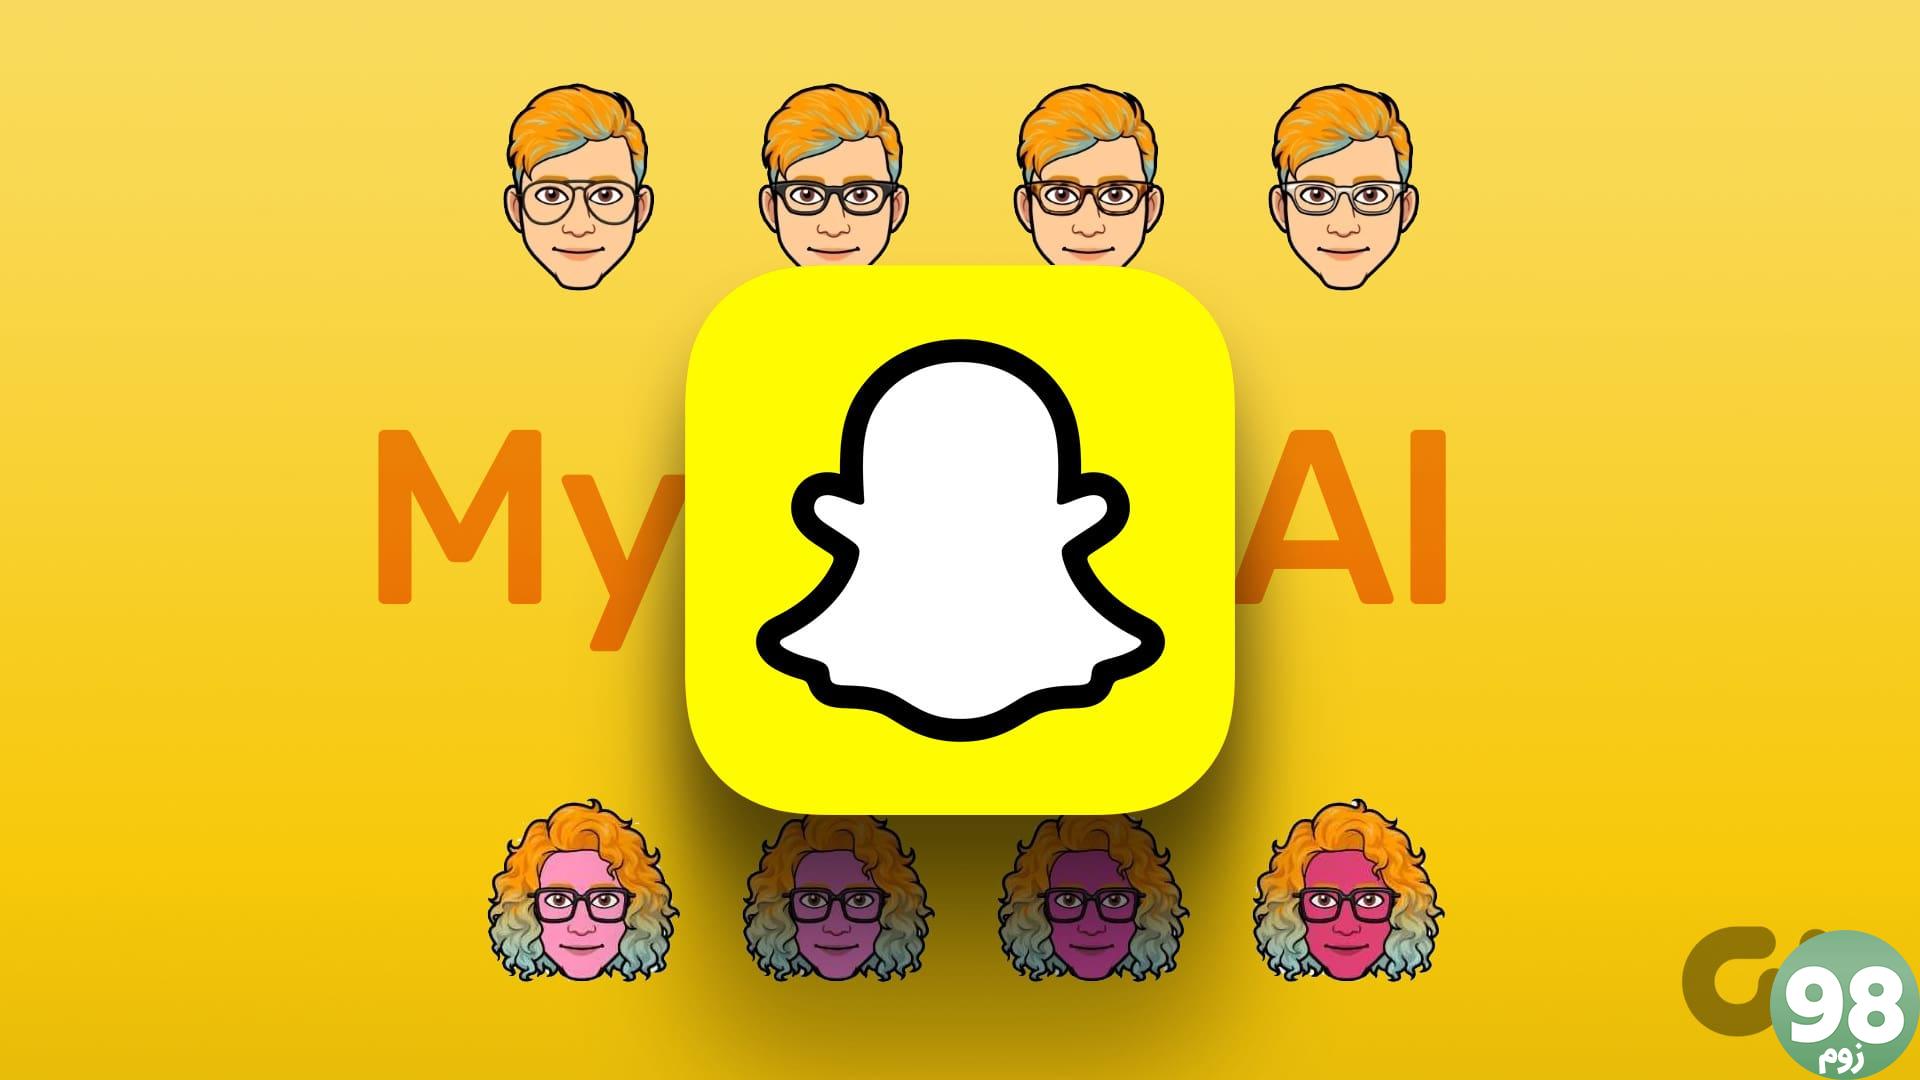 جنسیت و نام Snapchat AI را تغییر دهید